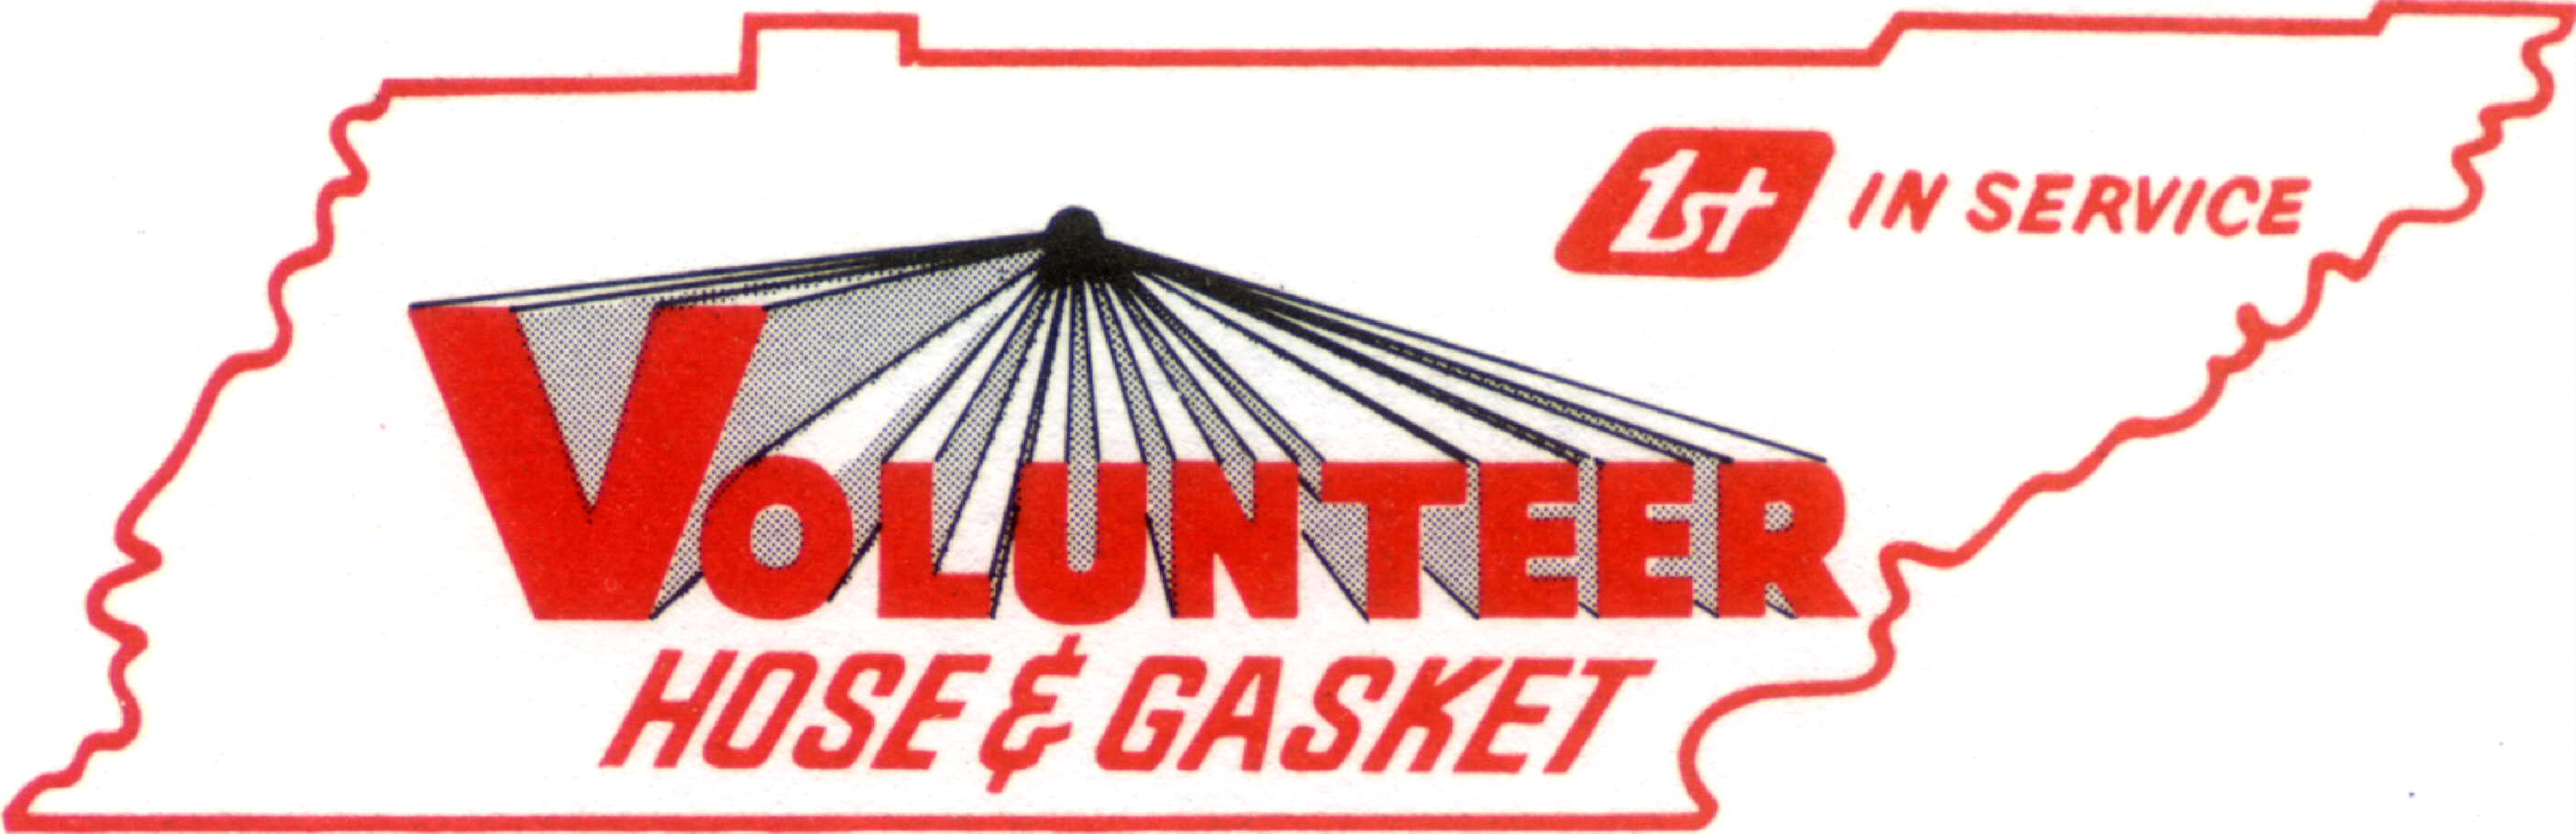 Volunteer Hose & Gasket